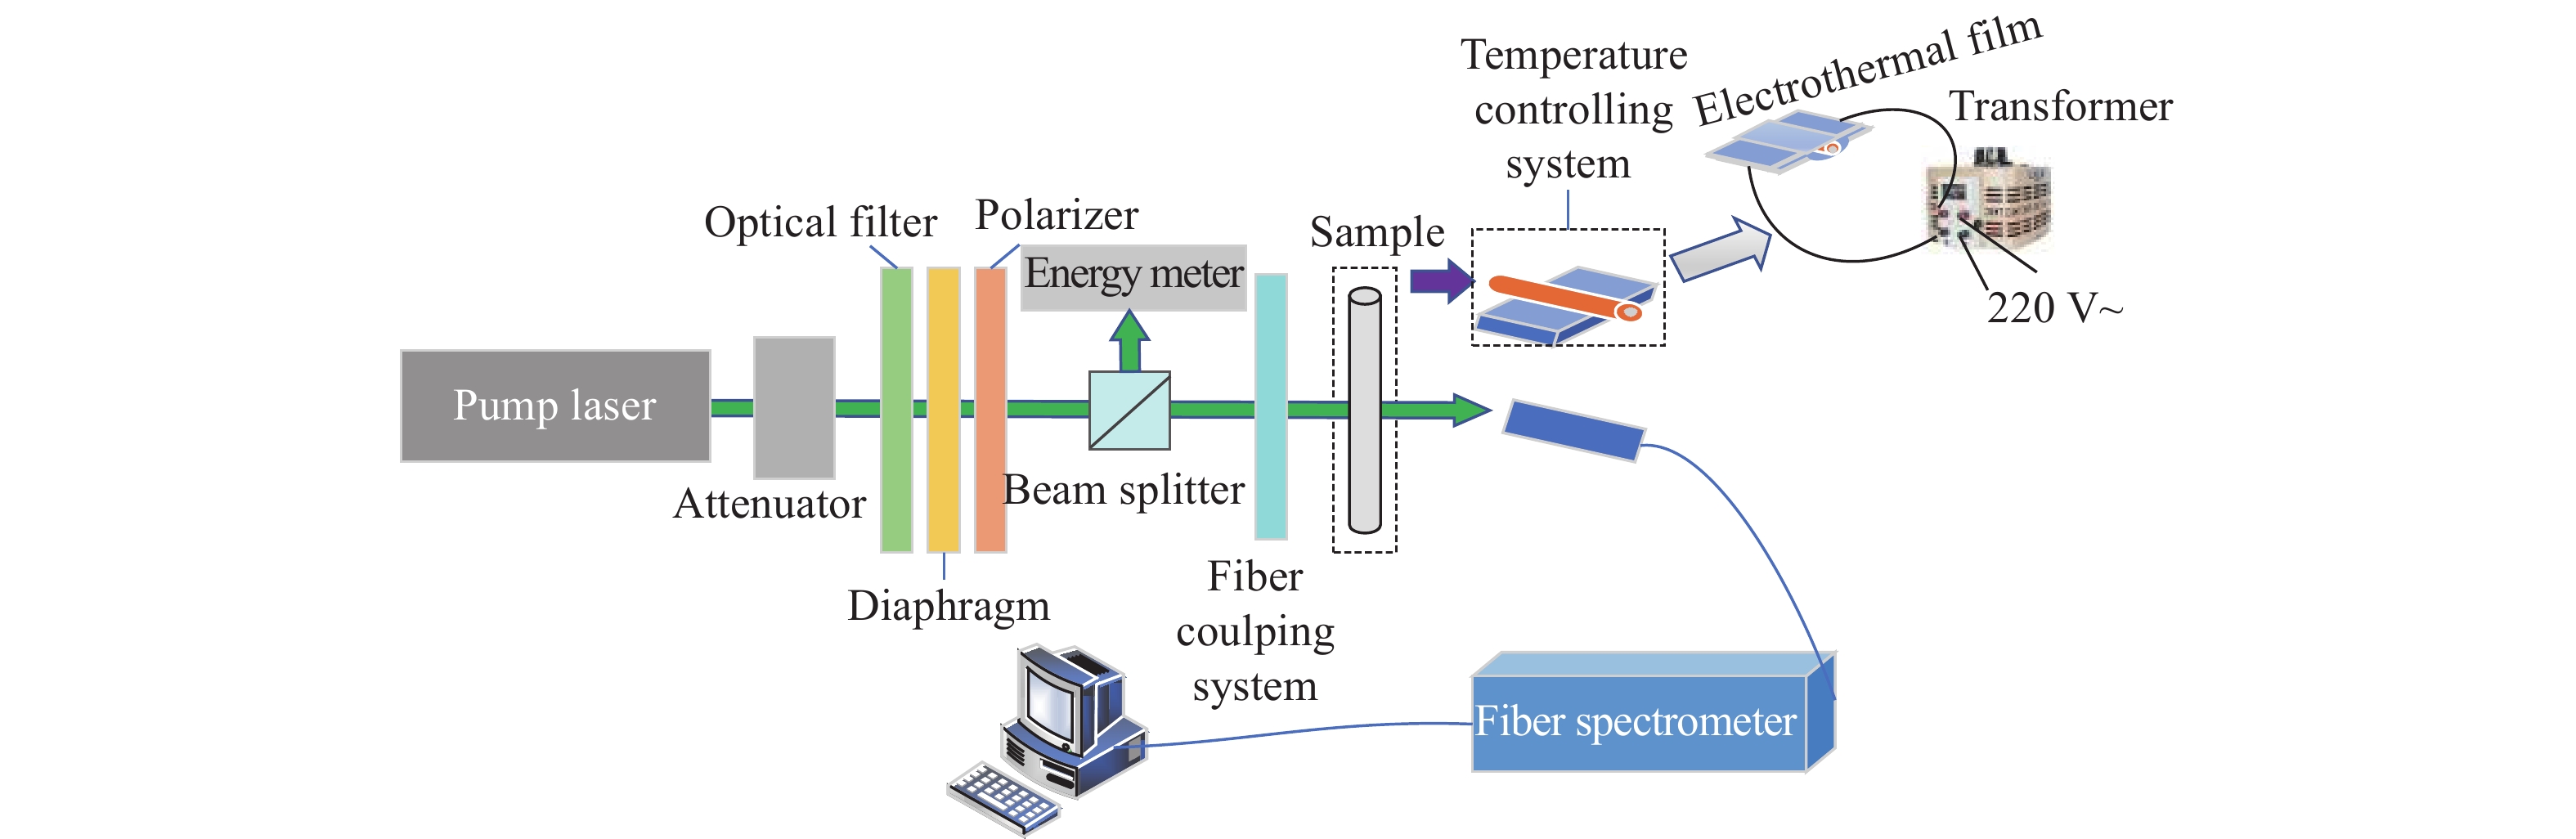 Optical setup for probing laser emission spectrum